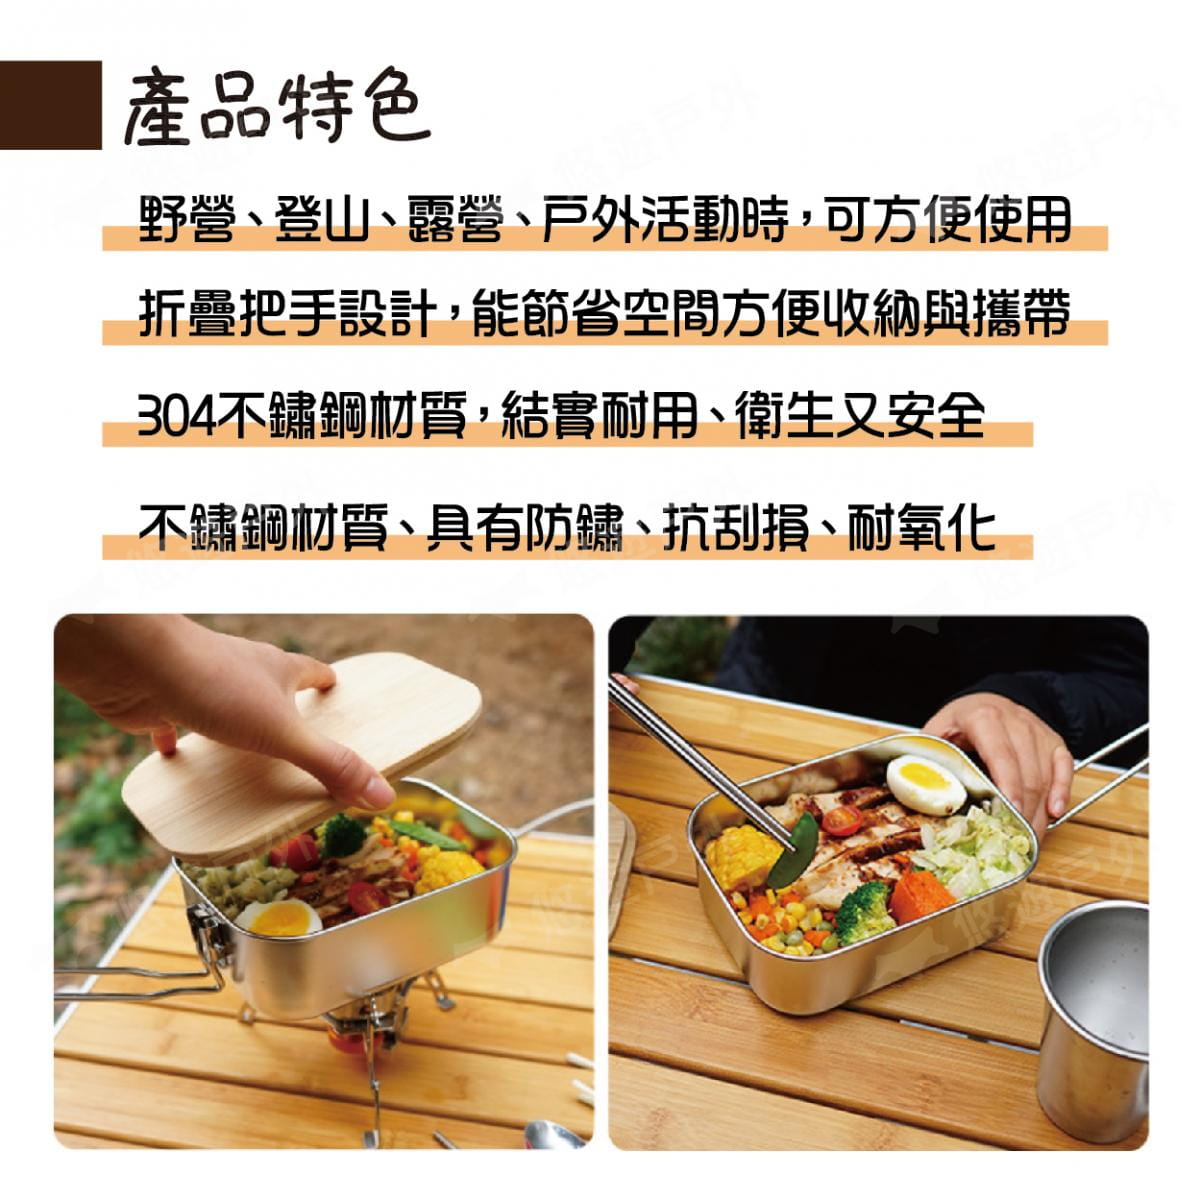 【CLS 】竹木板蓋不鏽鋼野餐盒 悠遊戶外 1